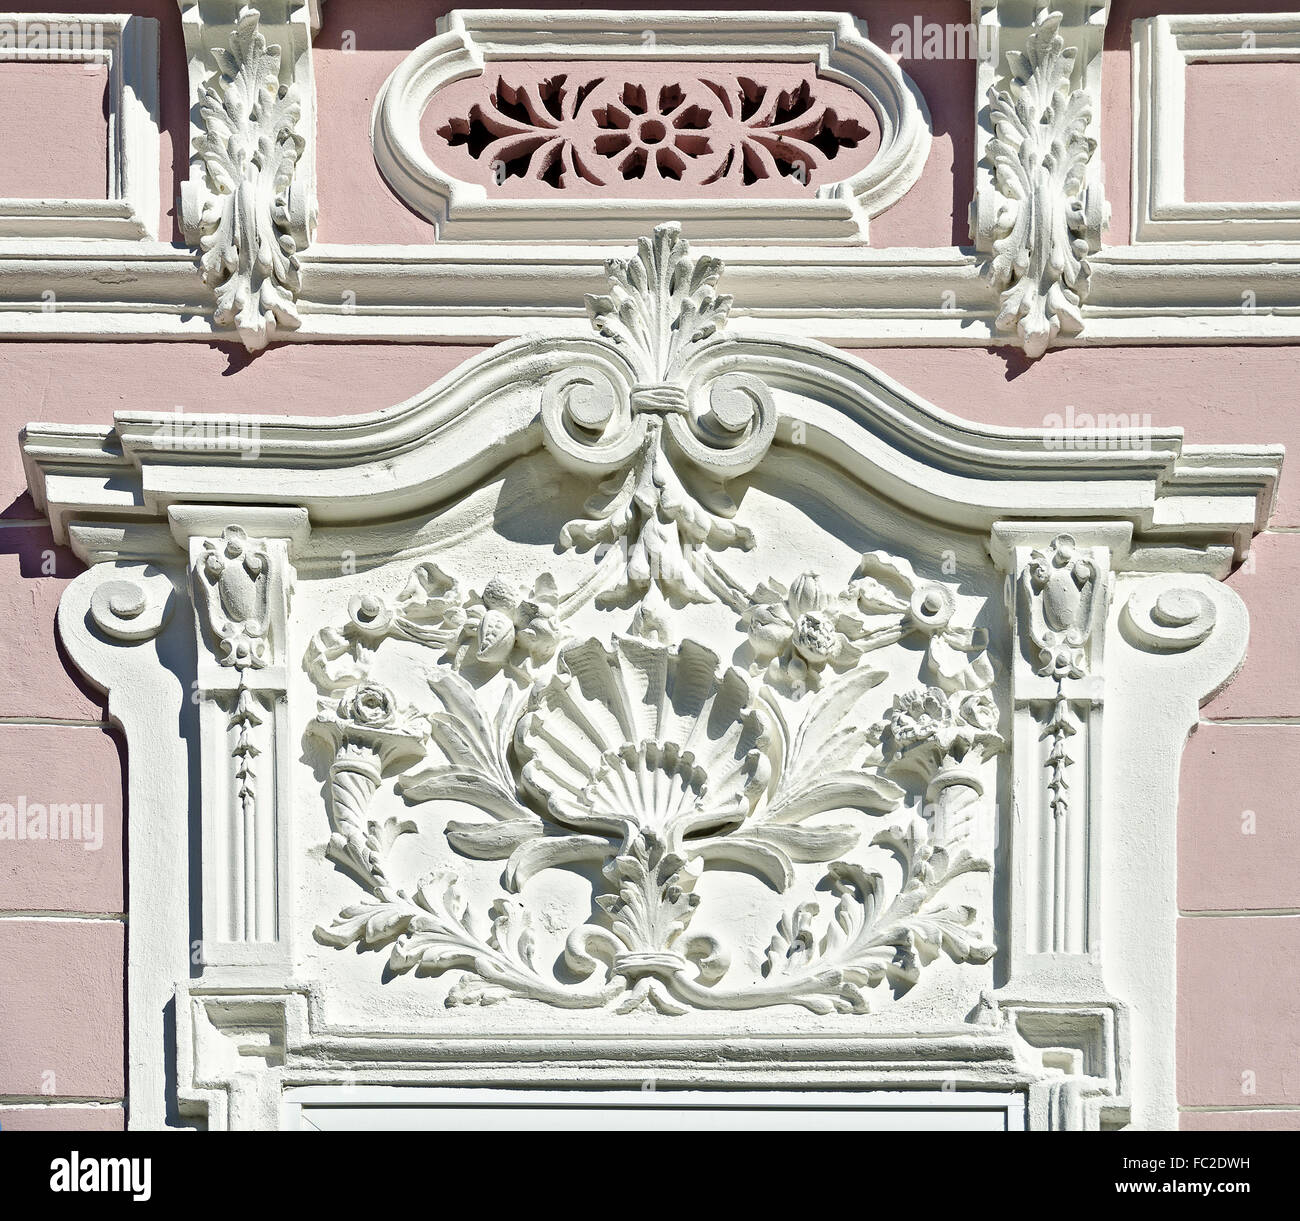 Barocco decorazione architettonica Foto Stock